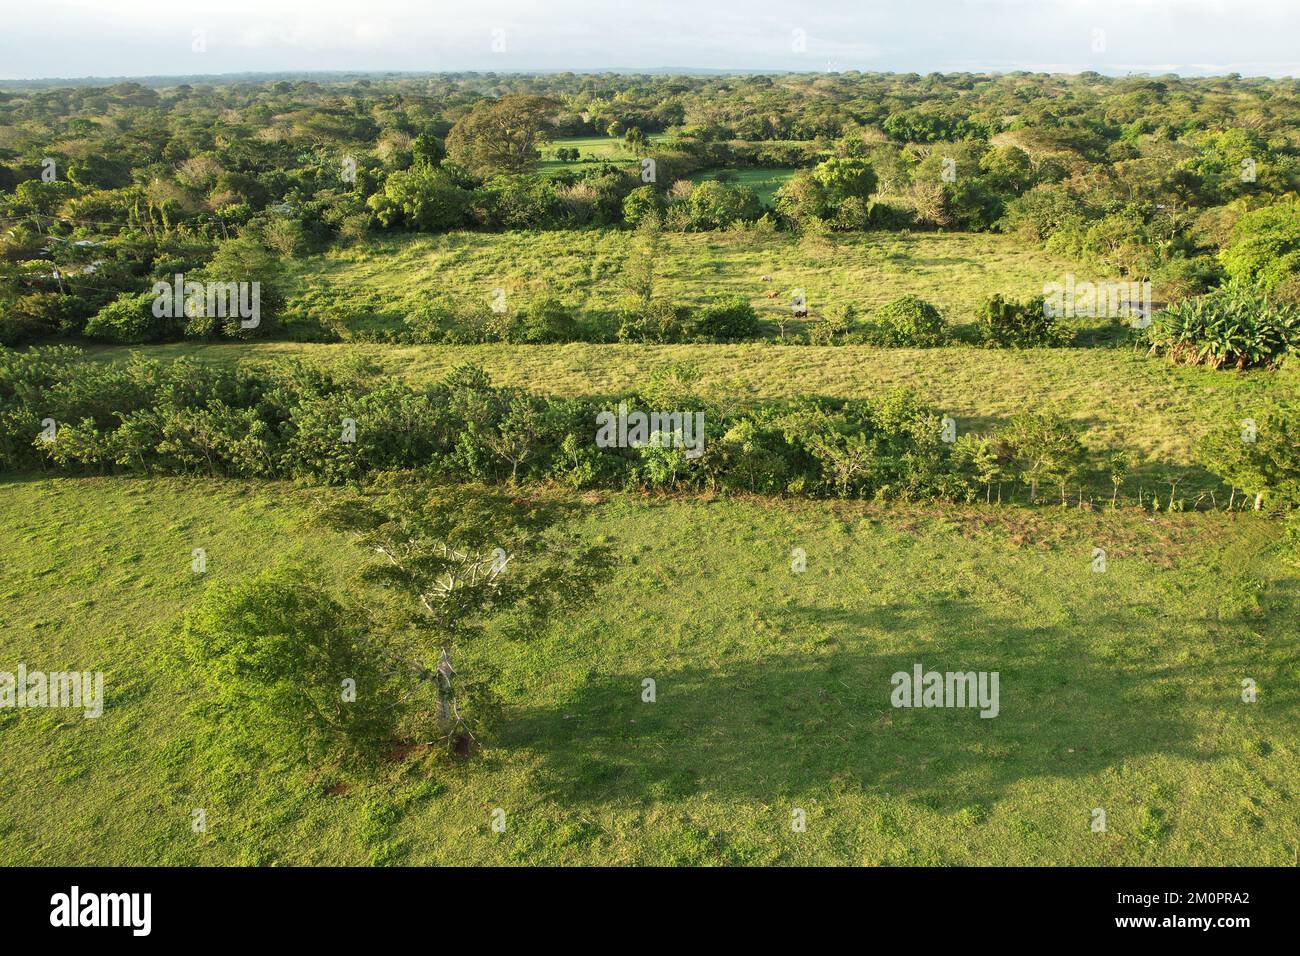 Vert agriculture plantation arrière-plan vue aérienne de drone Banque D'Images